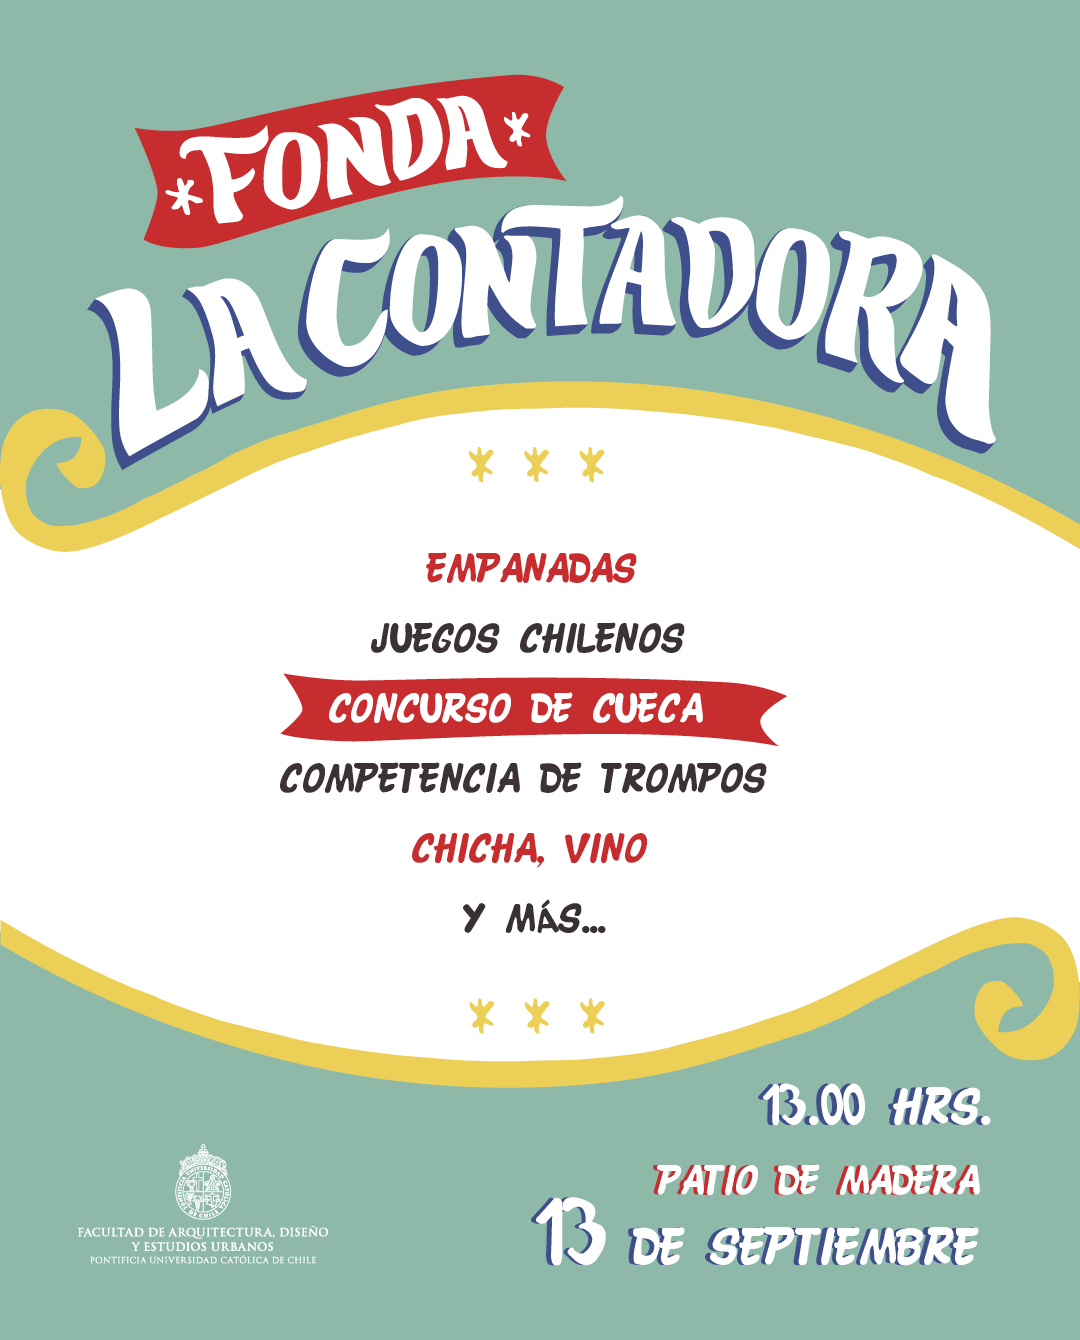 18-09-13_Afiche_Programa_Fonda_La_Contadora.png